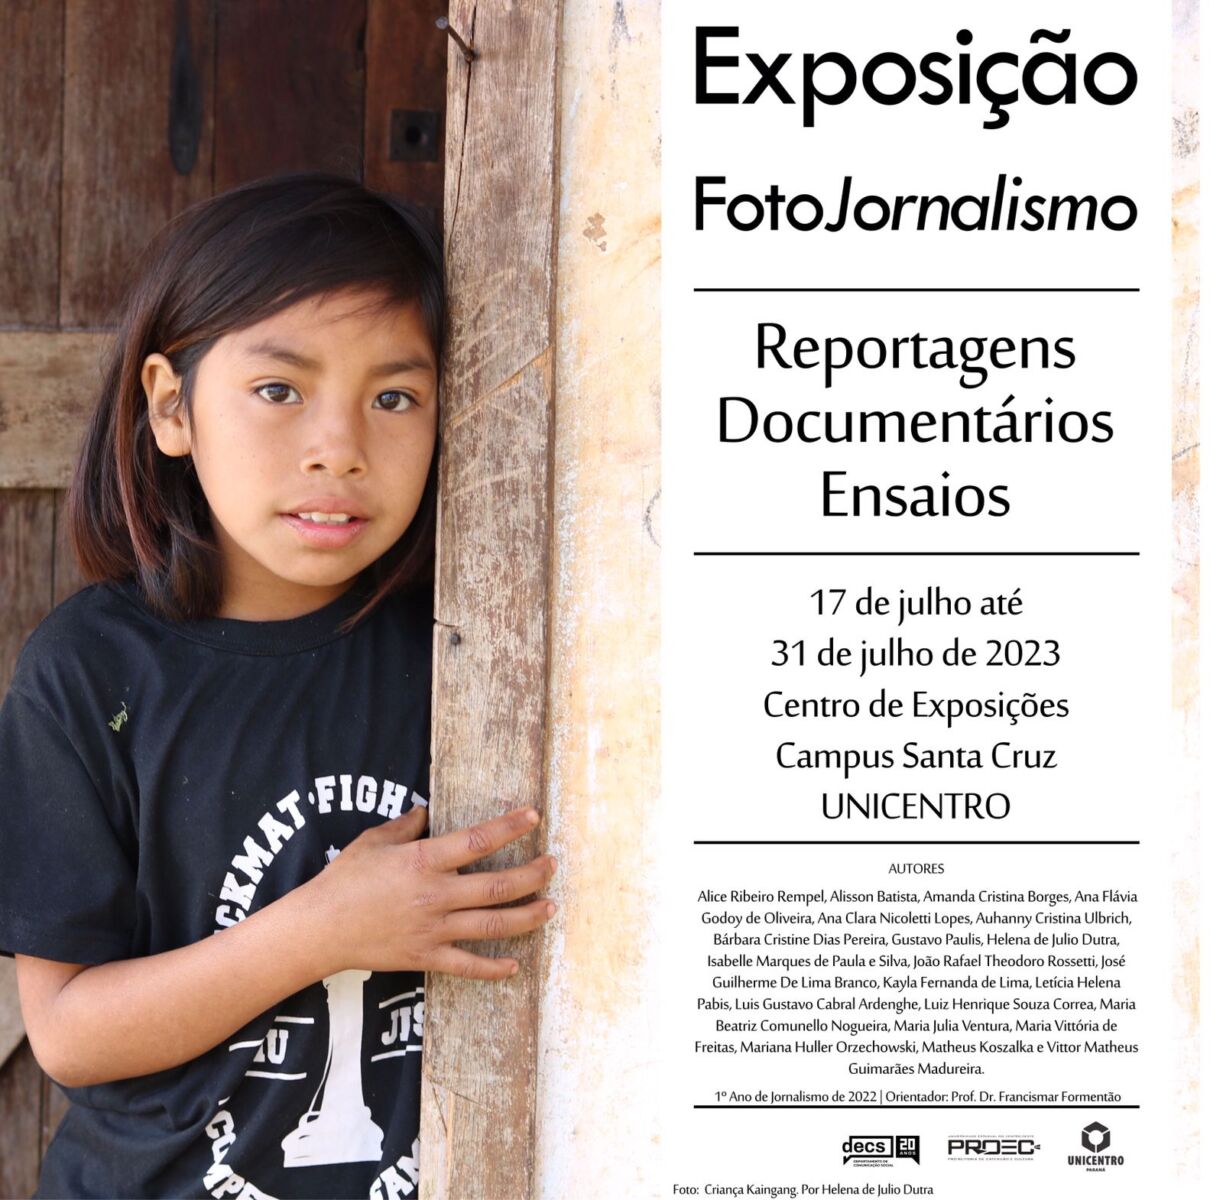 FotoJornalismo – Reportagens, documentários e ensaios